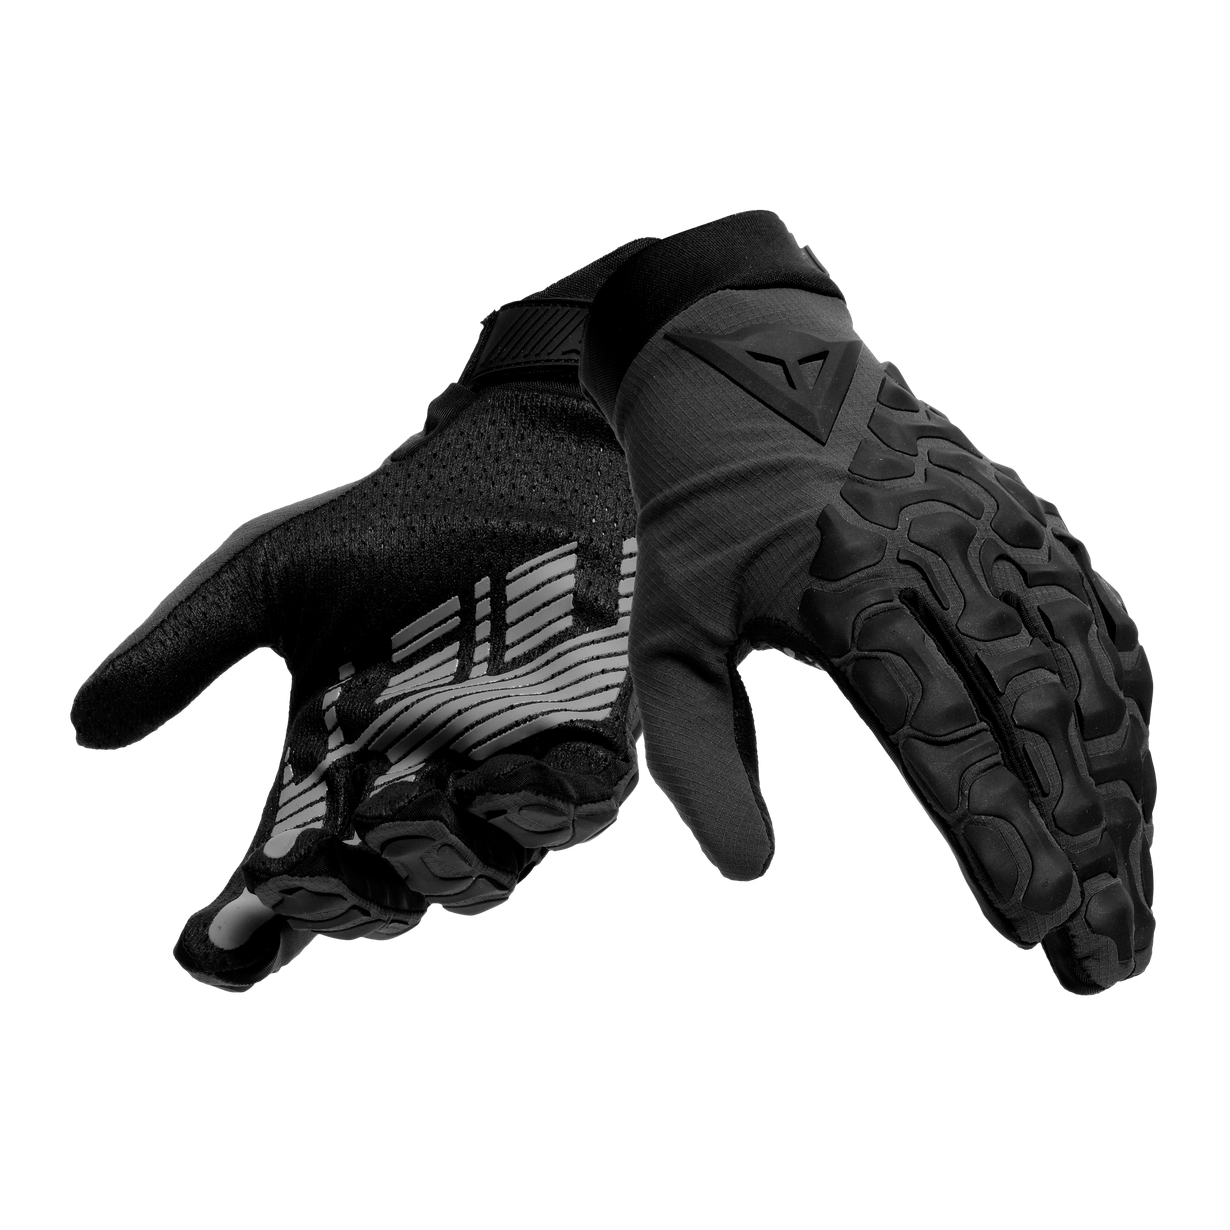 Productfoto van Dainese HGR Handschoenen Ext - zwart/zwart